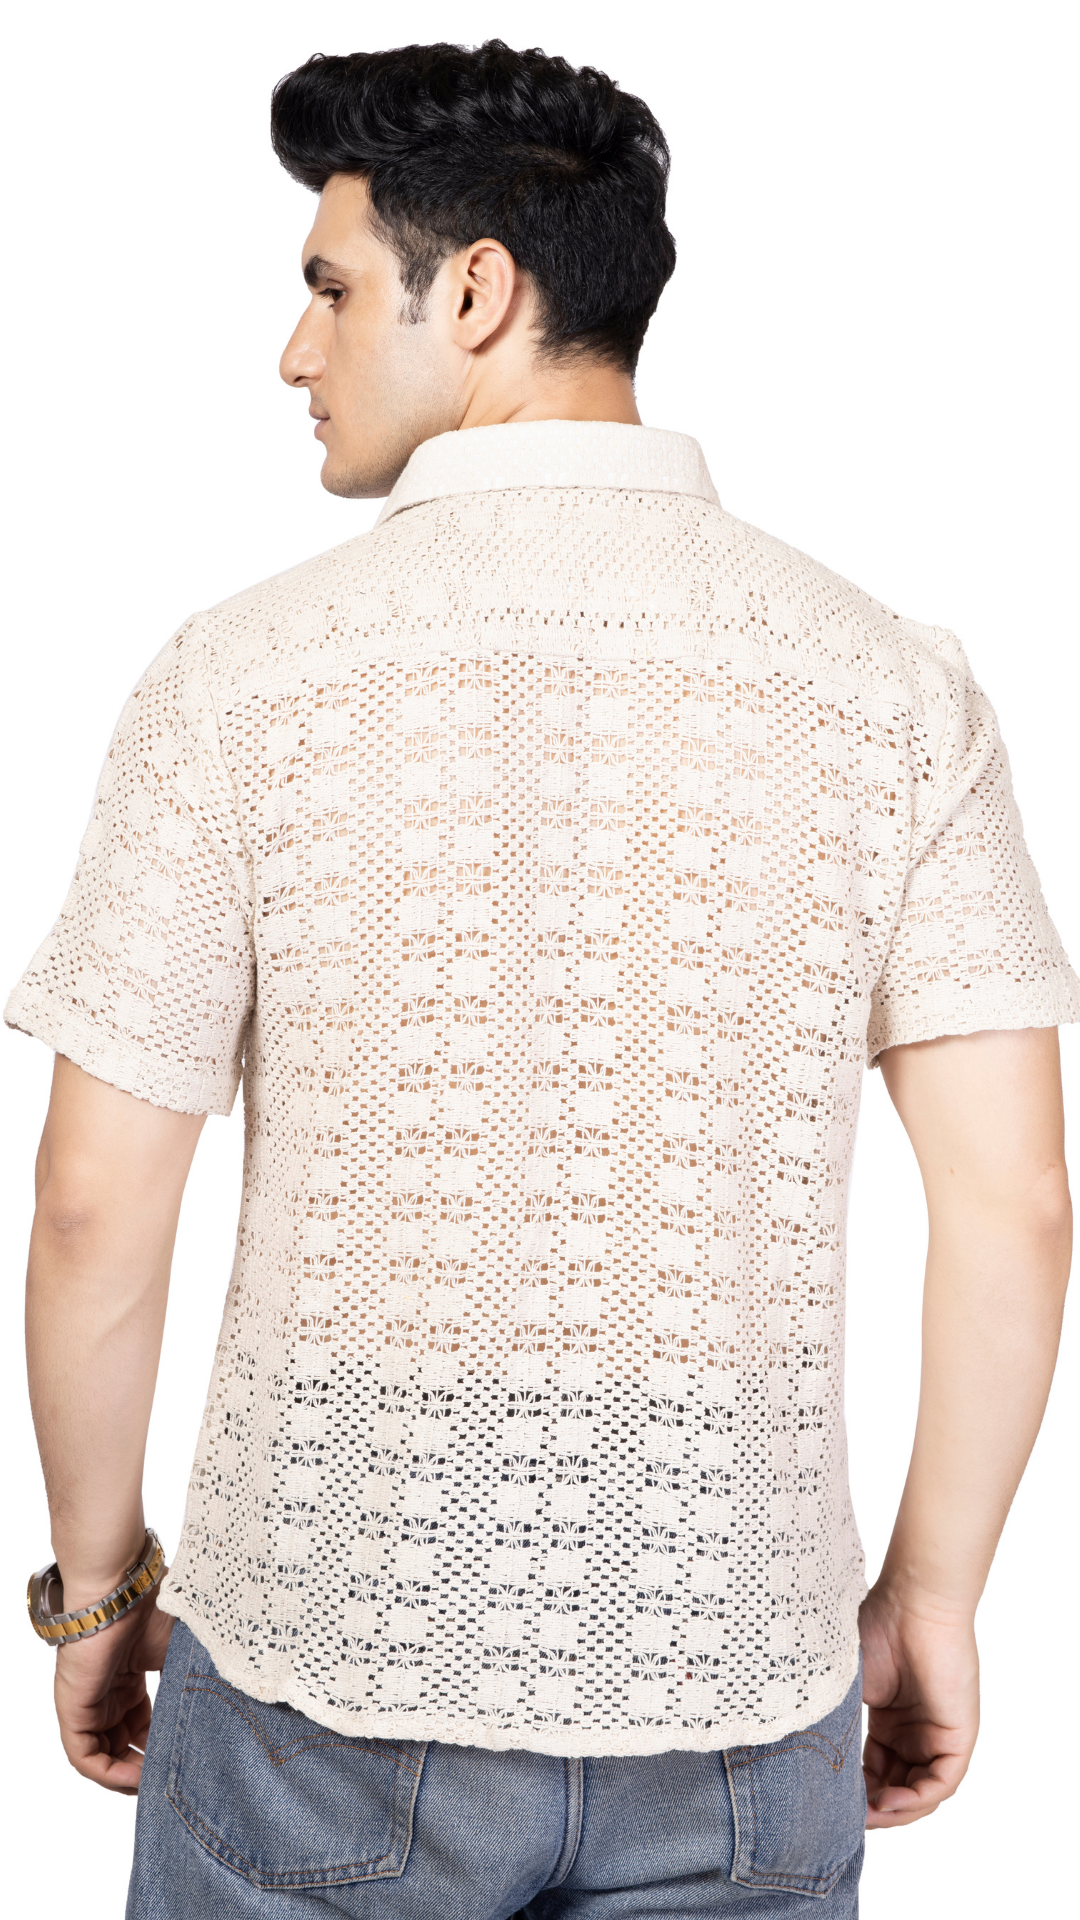 White Box Pattern Knitted Crochet Shirt